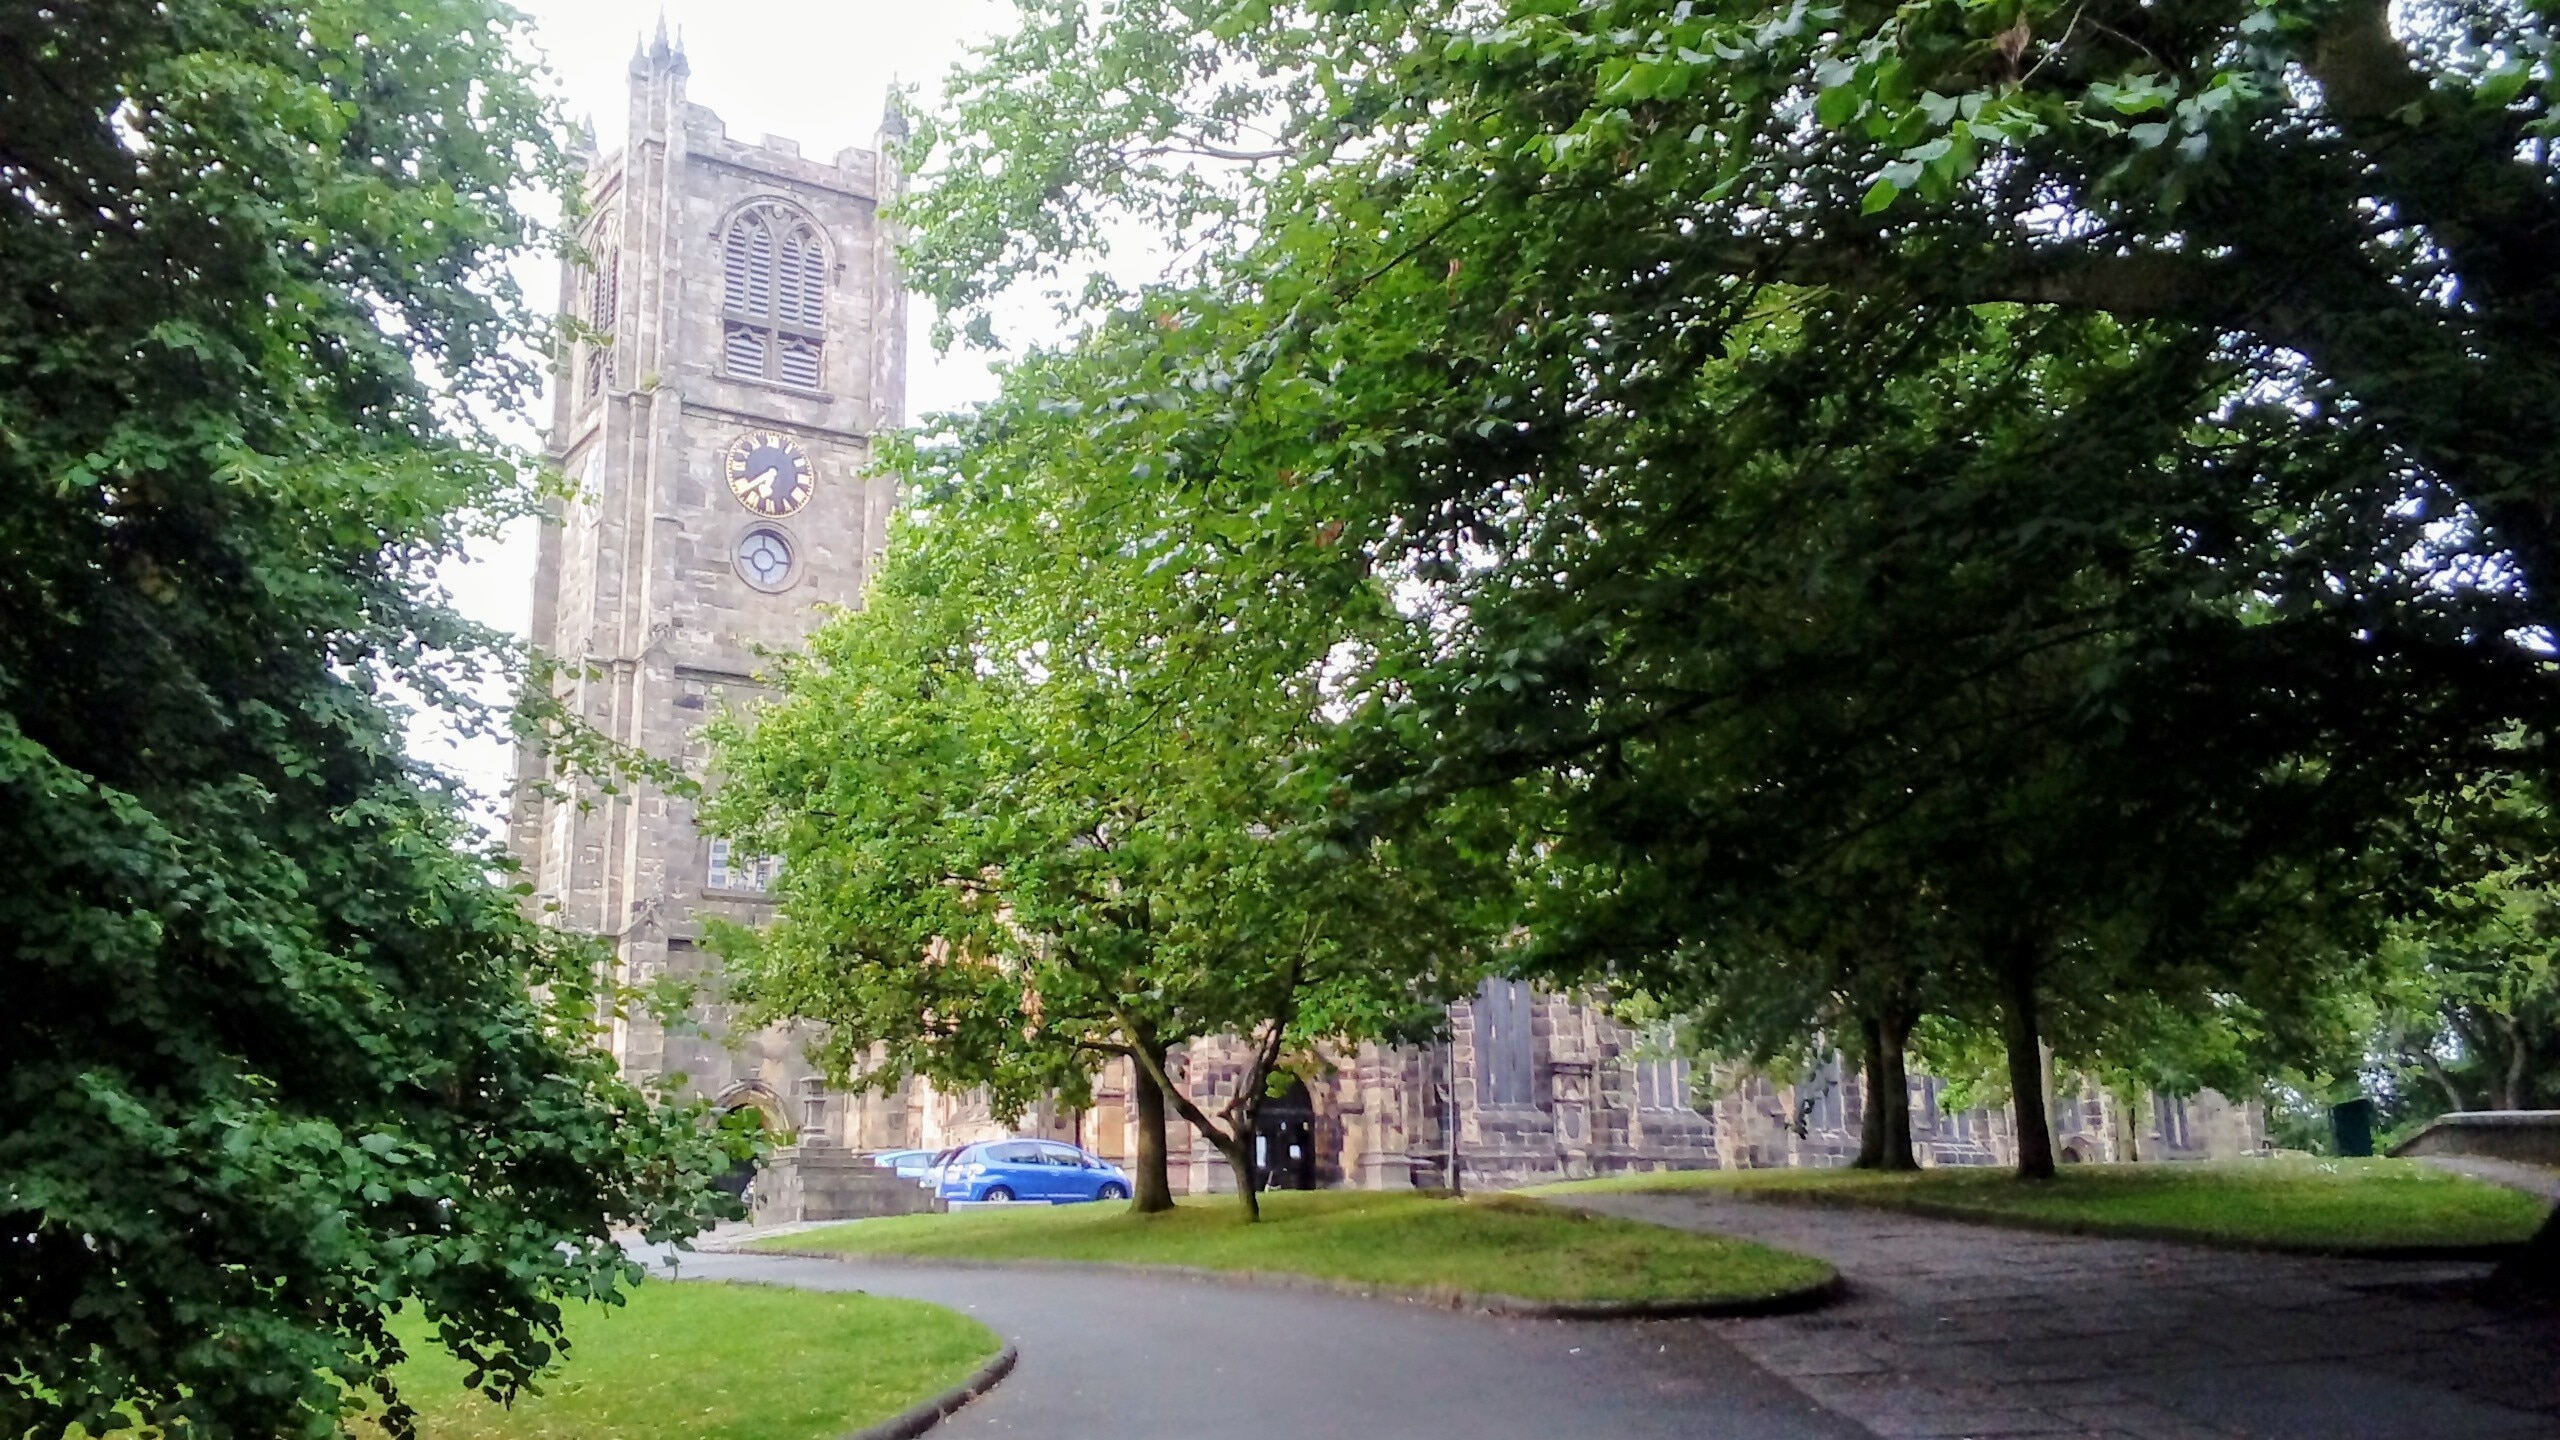 A glimpse through to the Priory Church. #lifeatexpedia